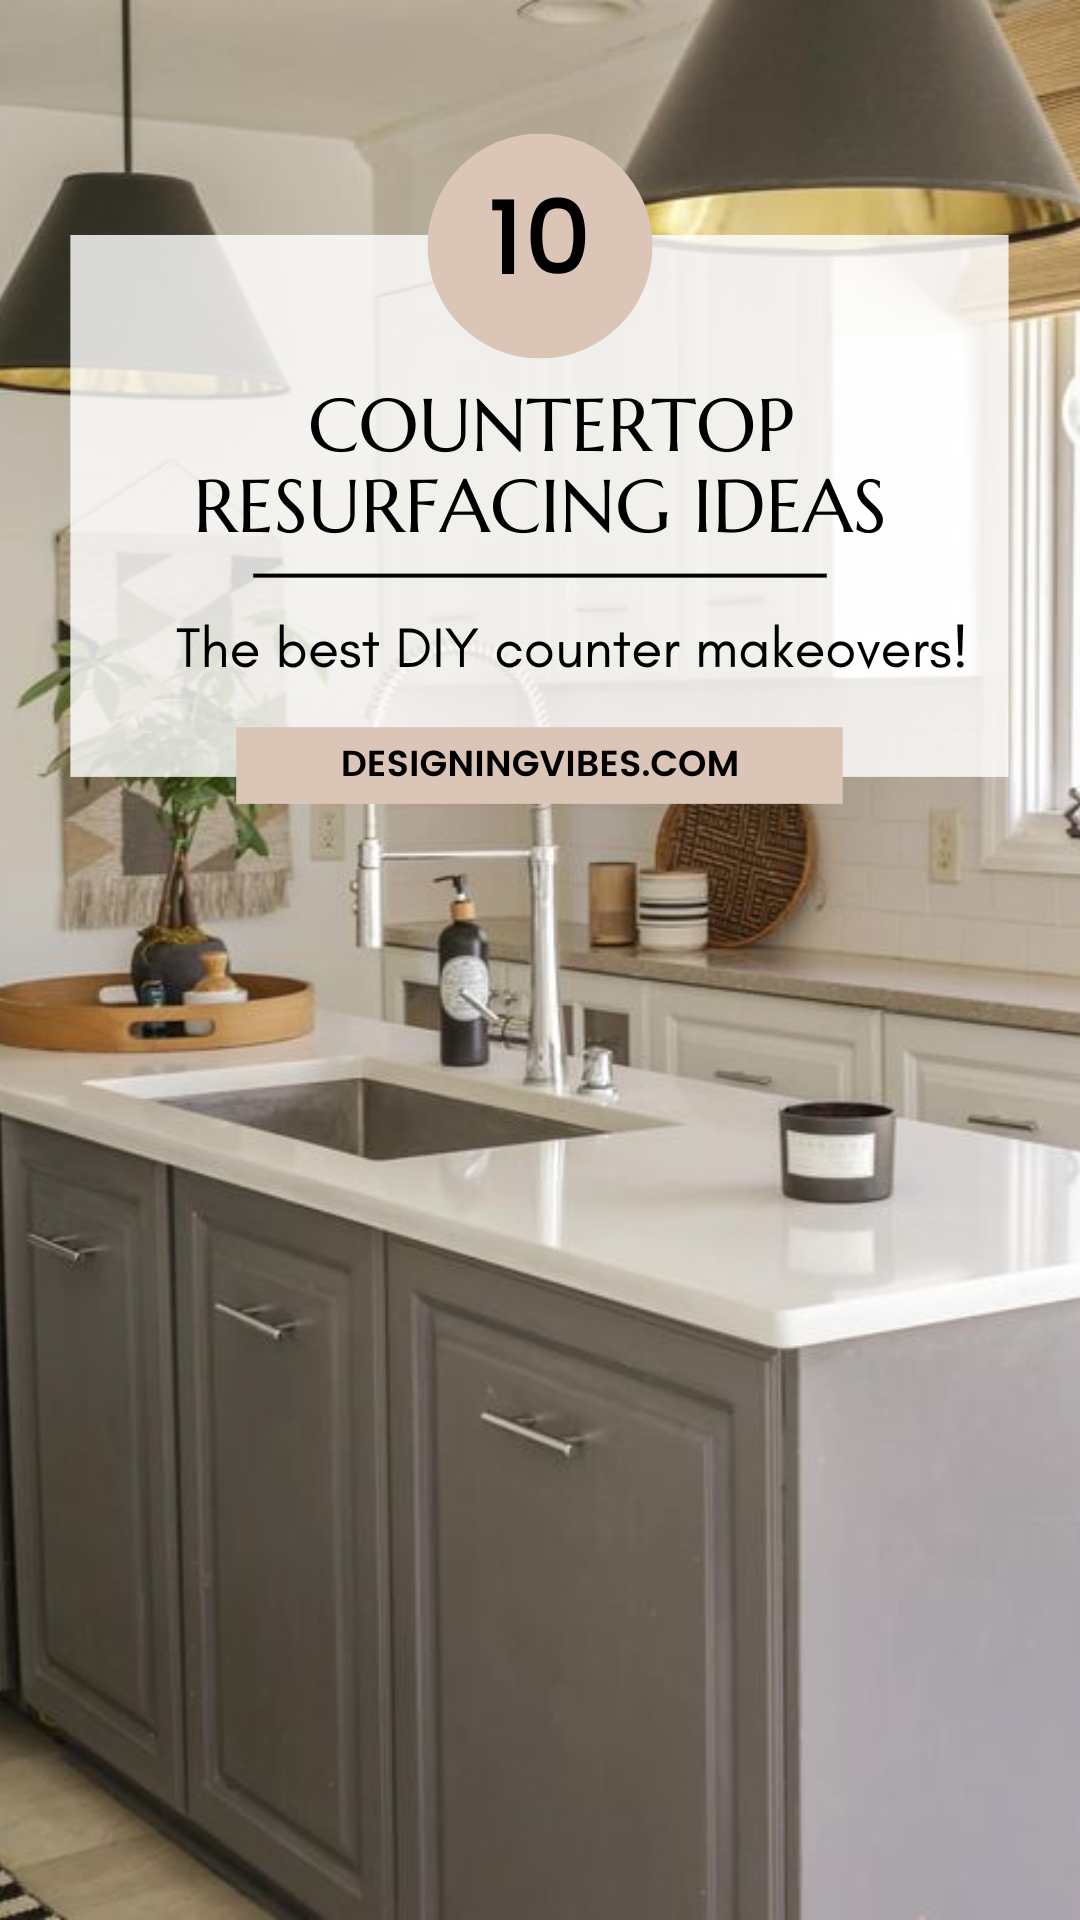 Kitchen Countertop Renovation: 5 Best Ways to Redo Countertops